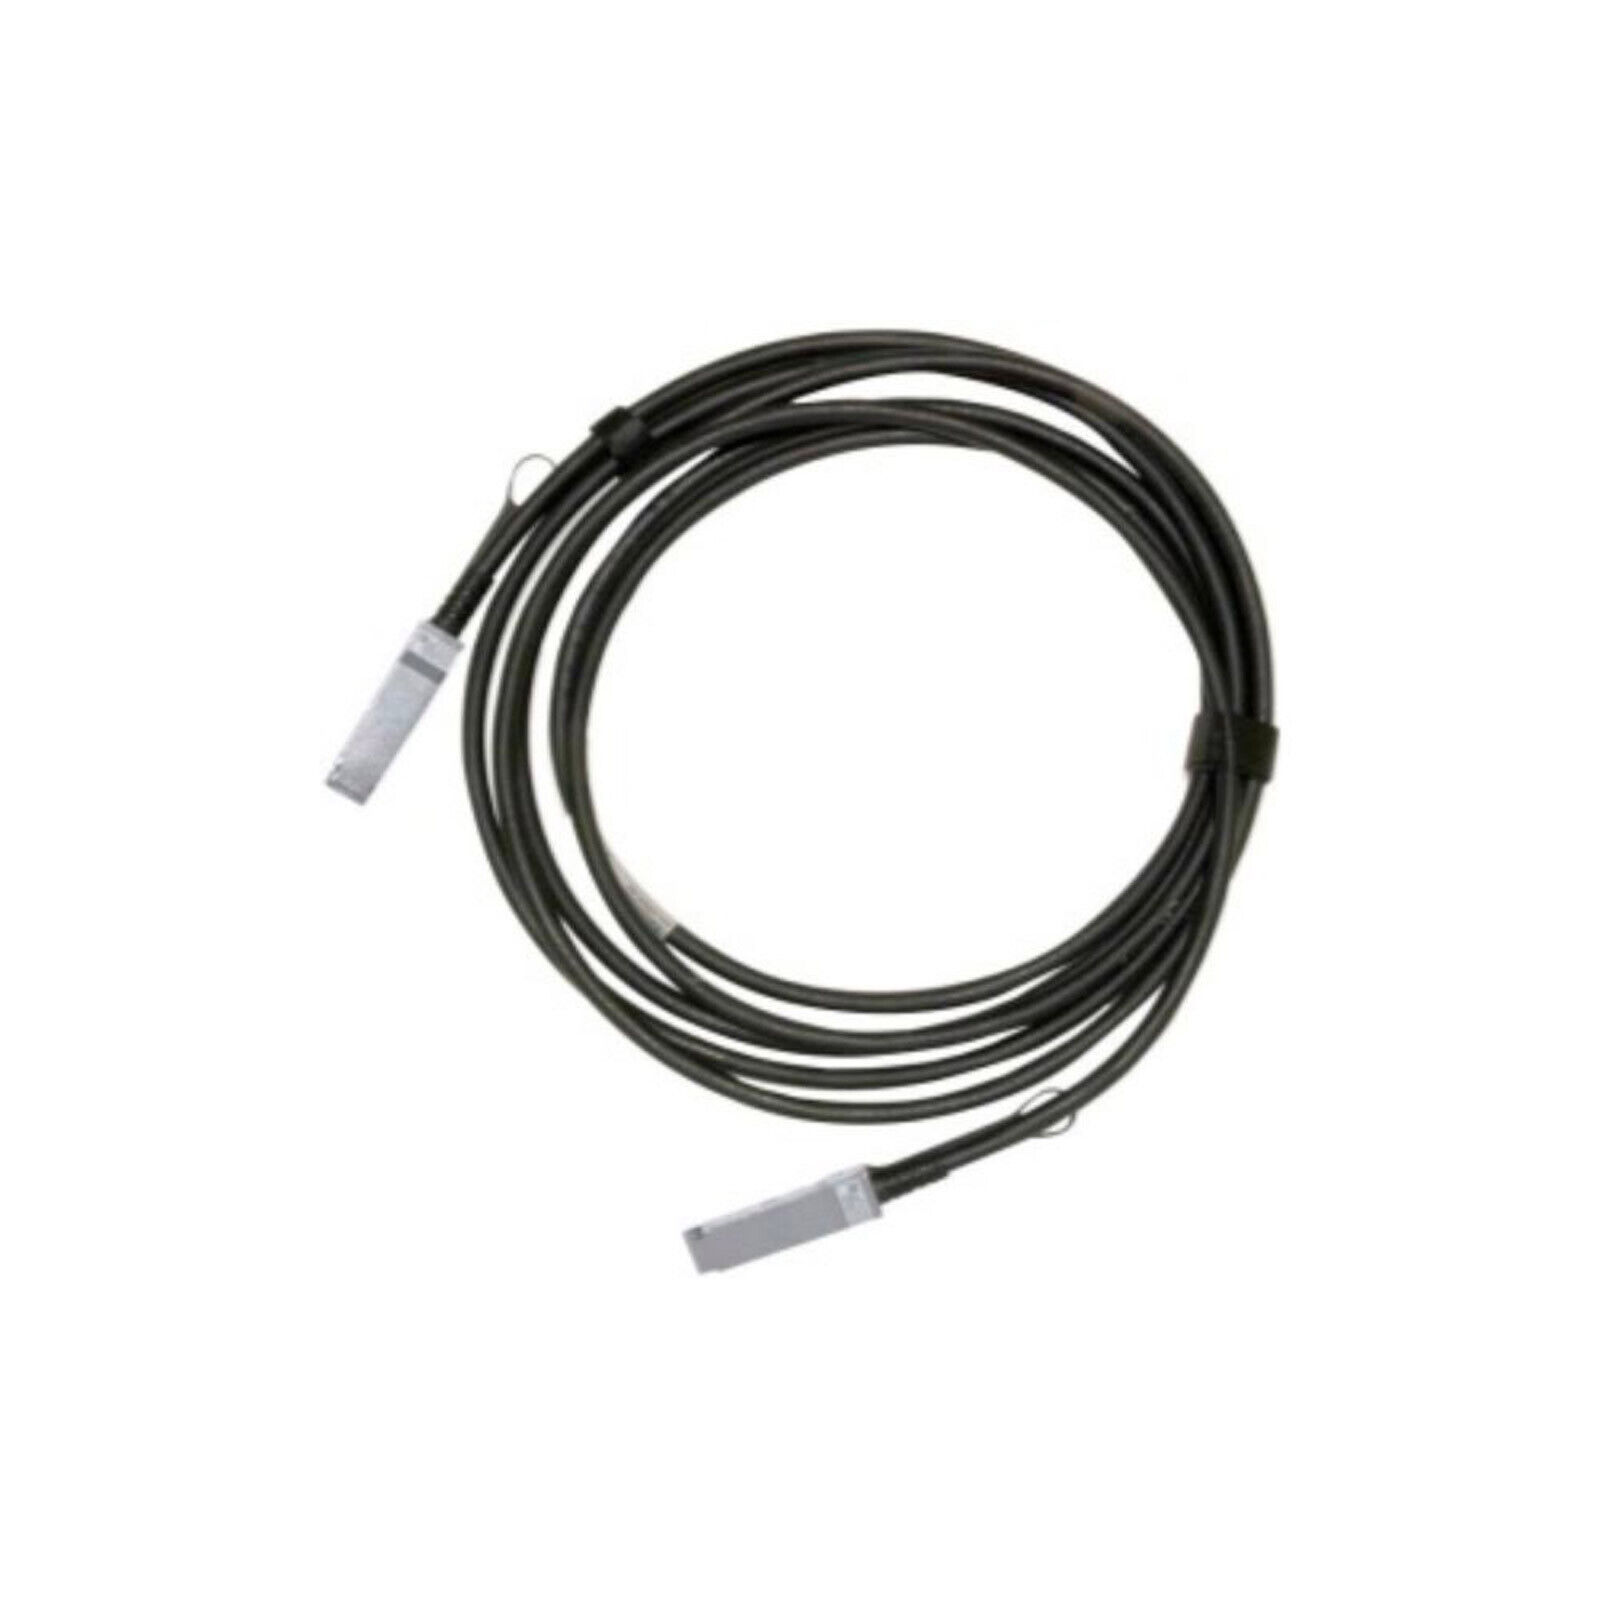 Mellanox 4.92ft QSFP 28 Passive Copper Cable Black MCP1600E01AE30